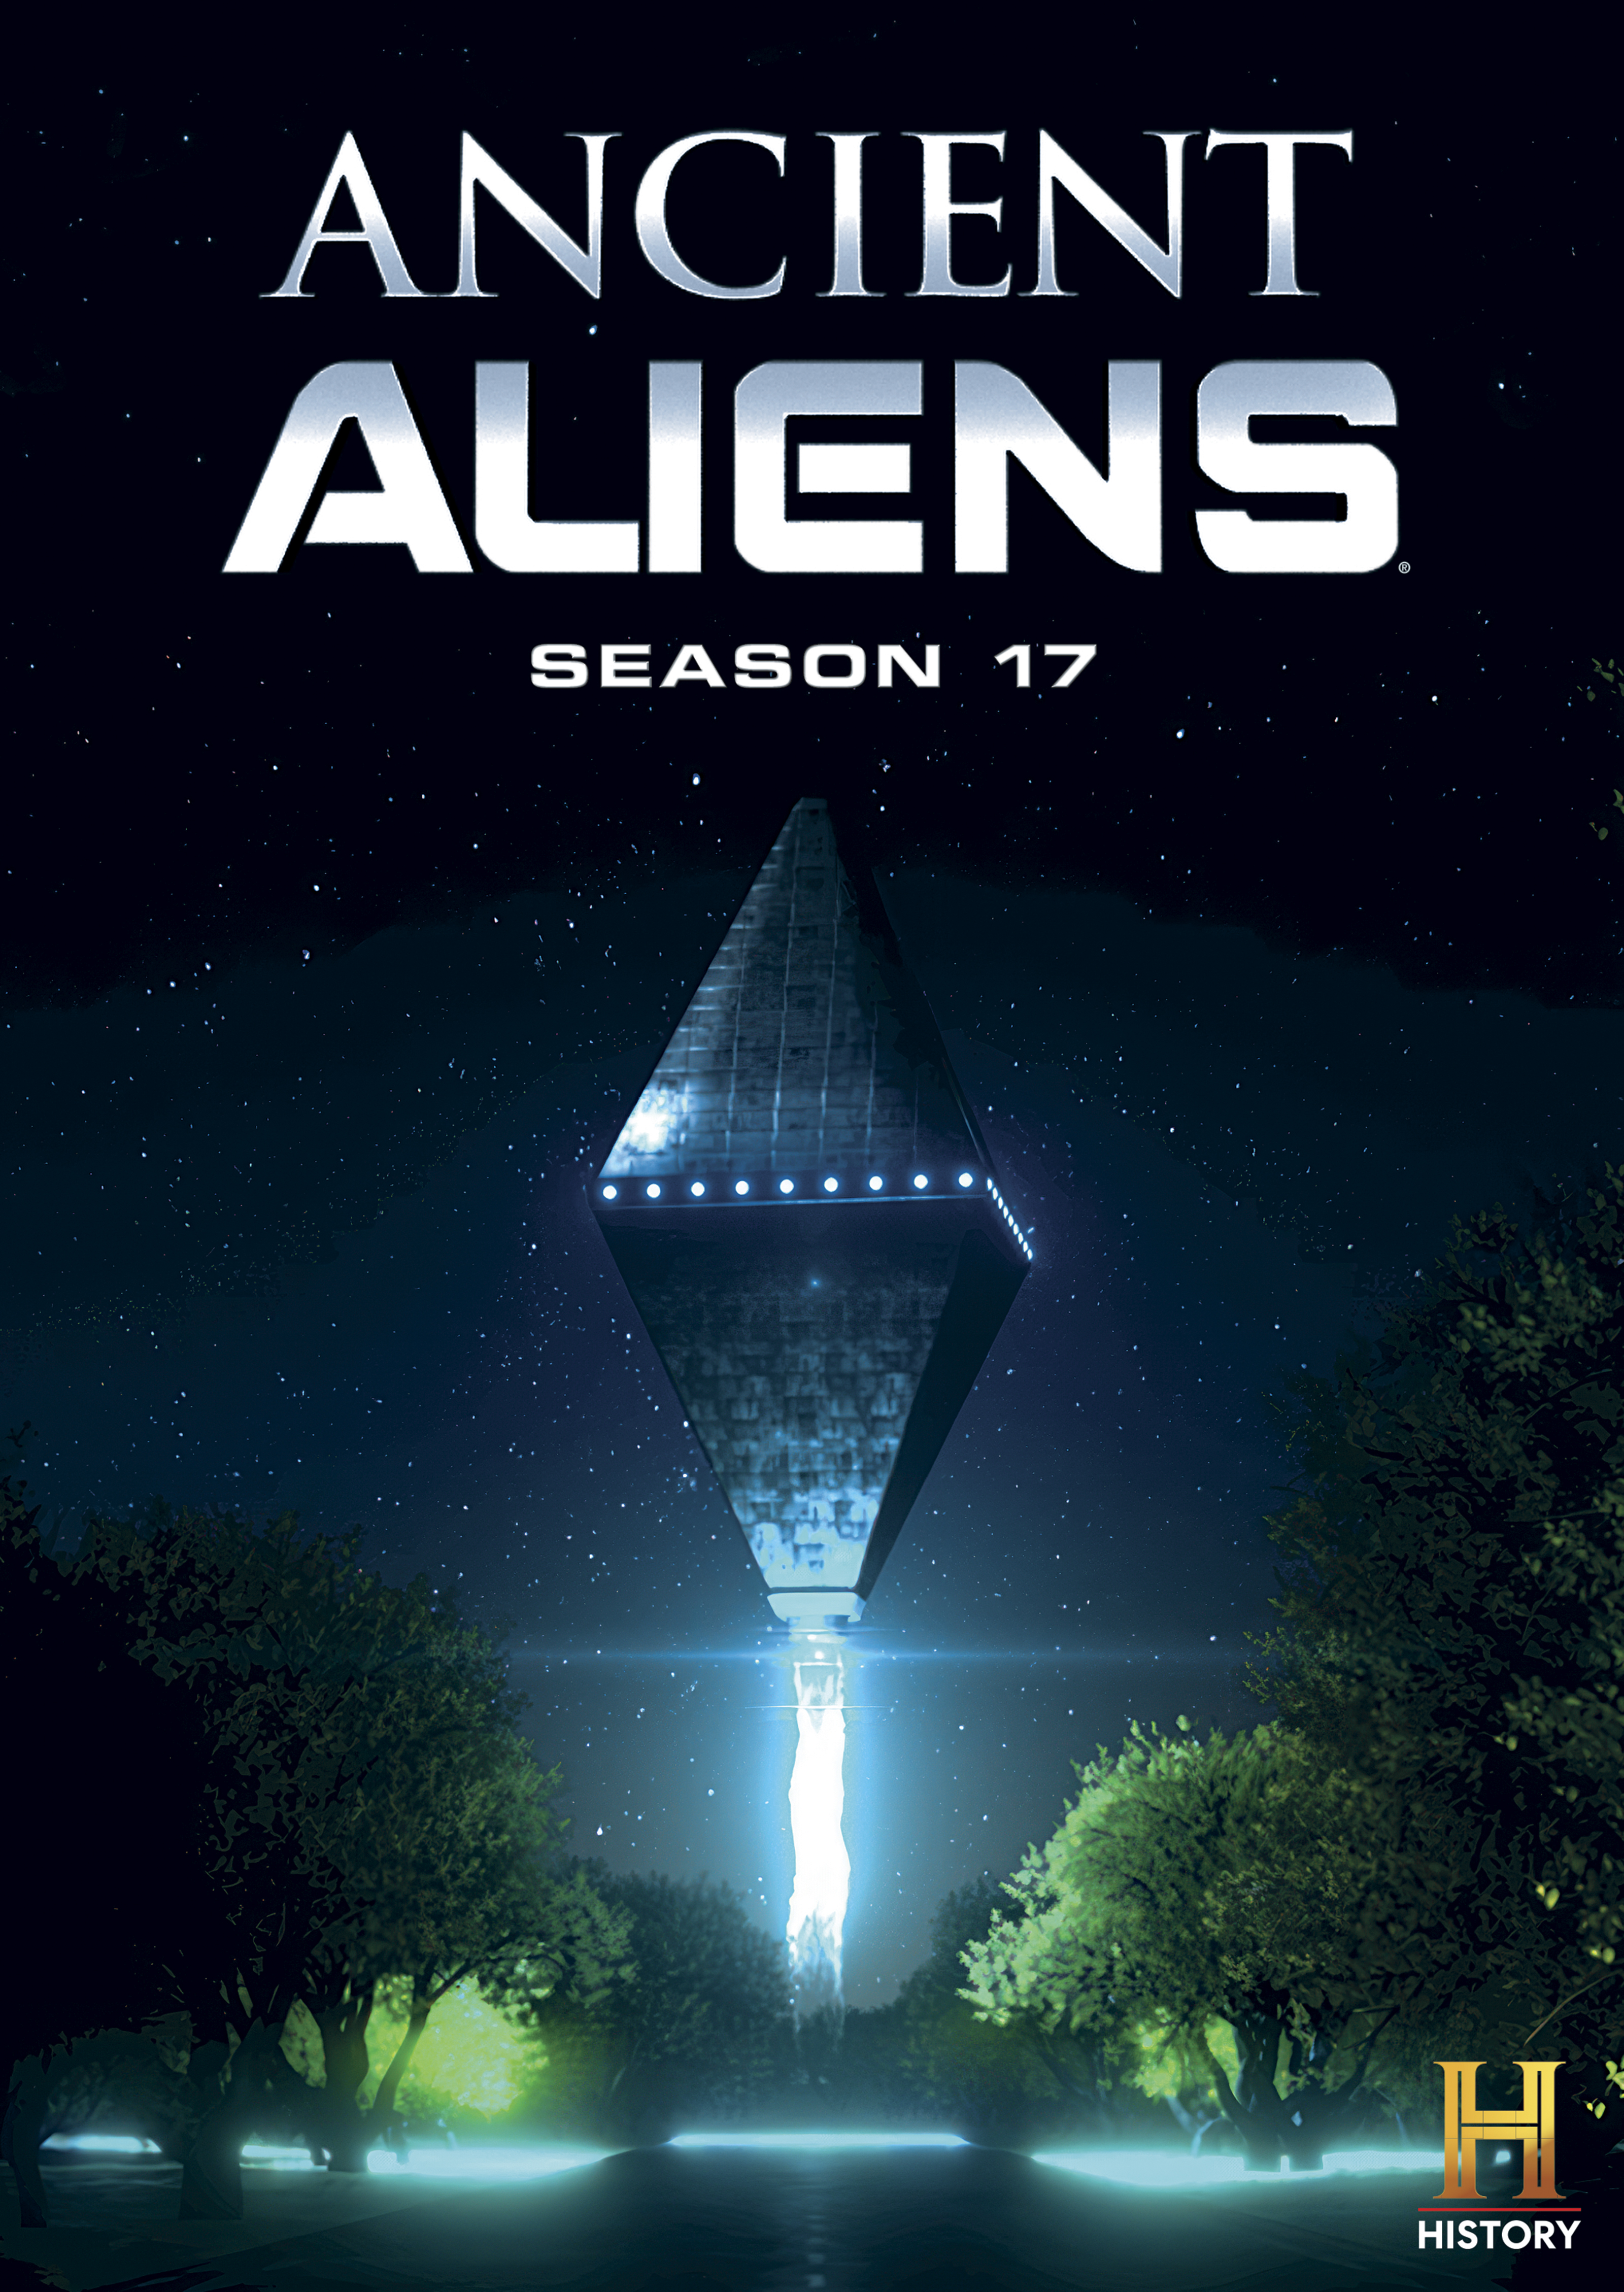 Ancient Aliens Season 17 DVD cover (Lionsgate)